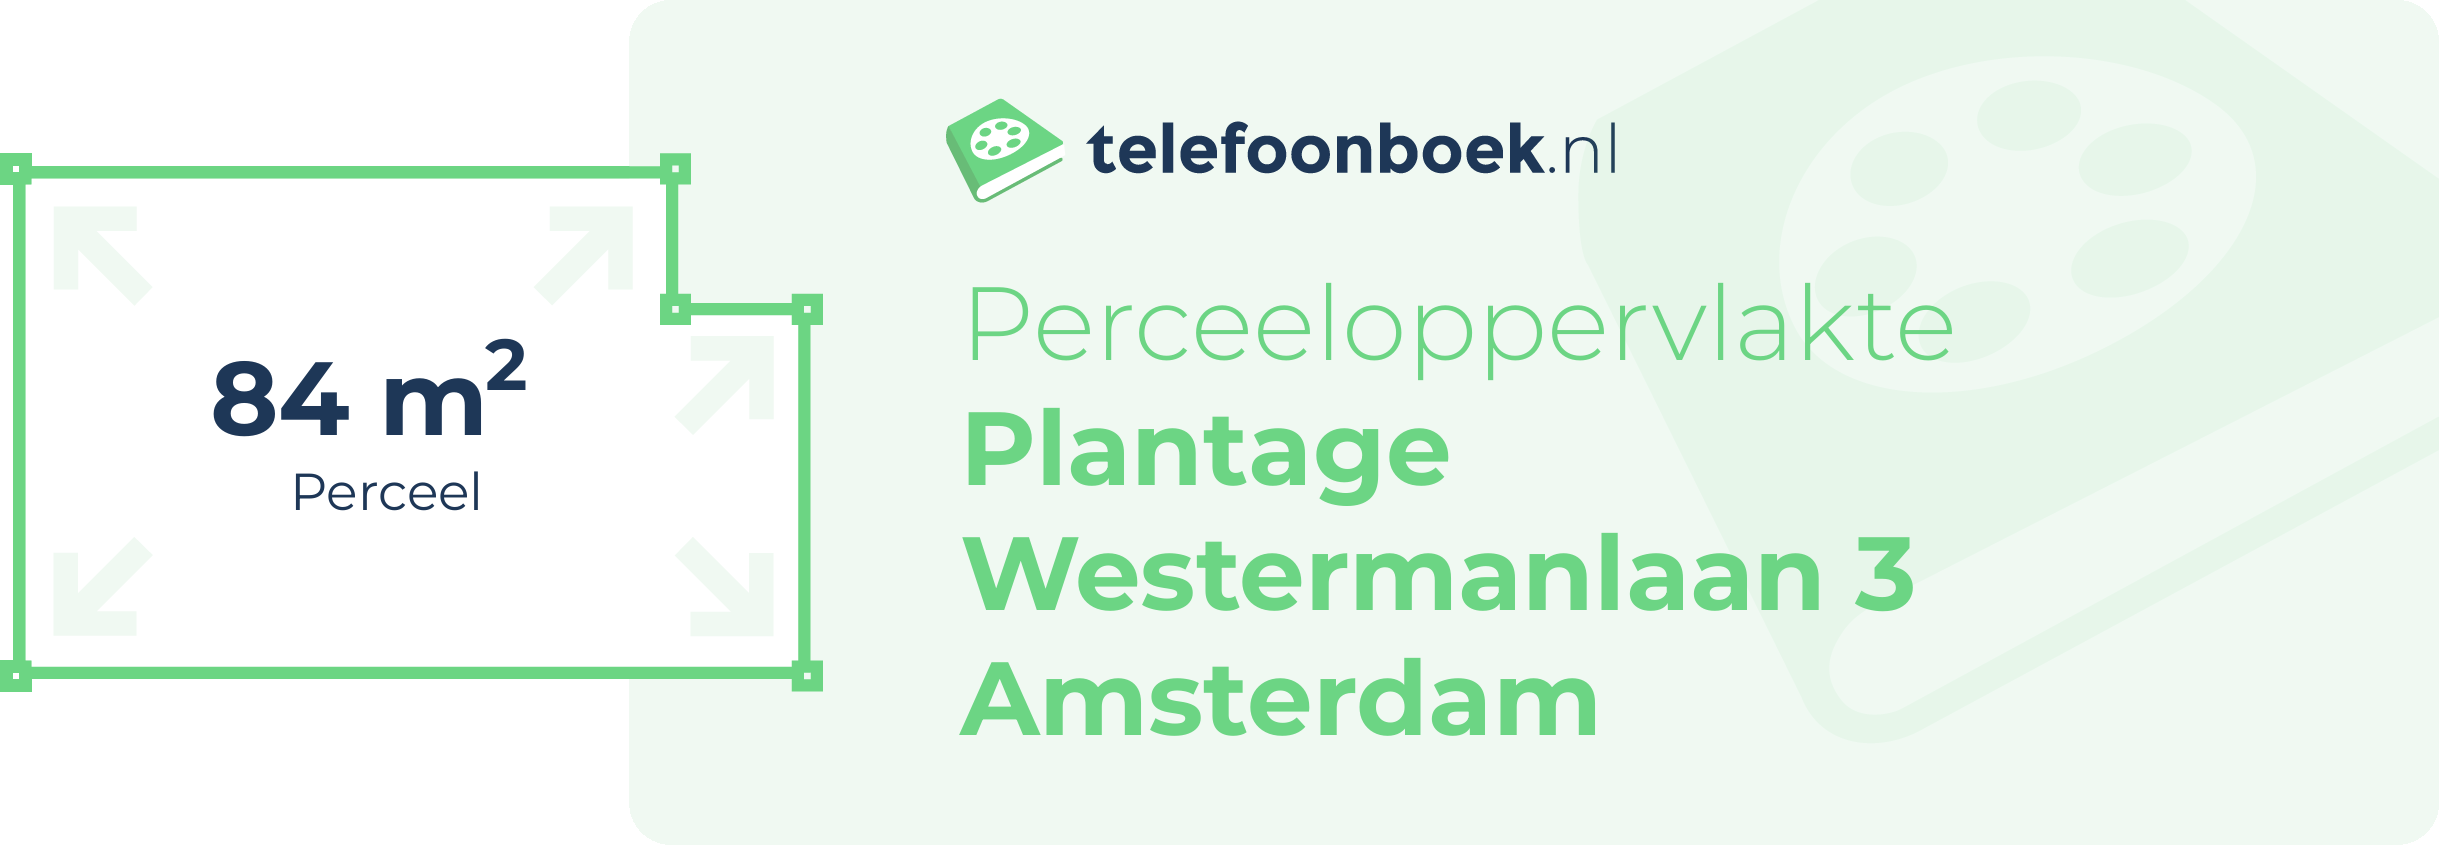 Perceeloppervlakte Plantage Westermanlaan 3 Amsterdam